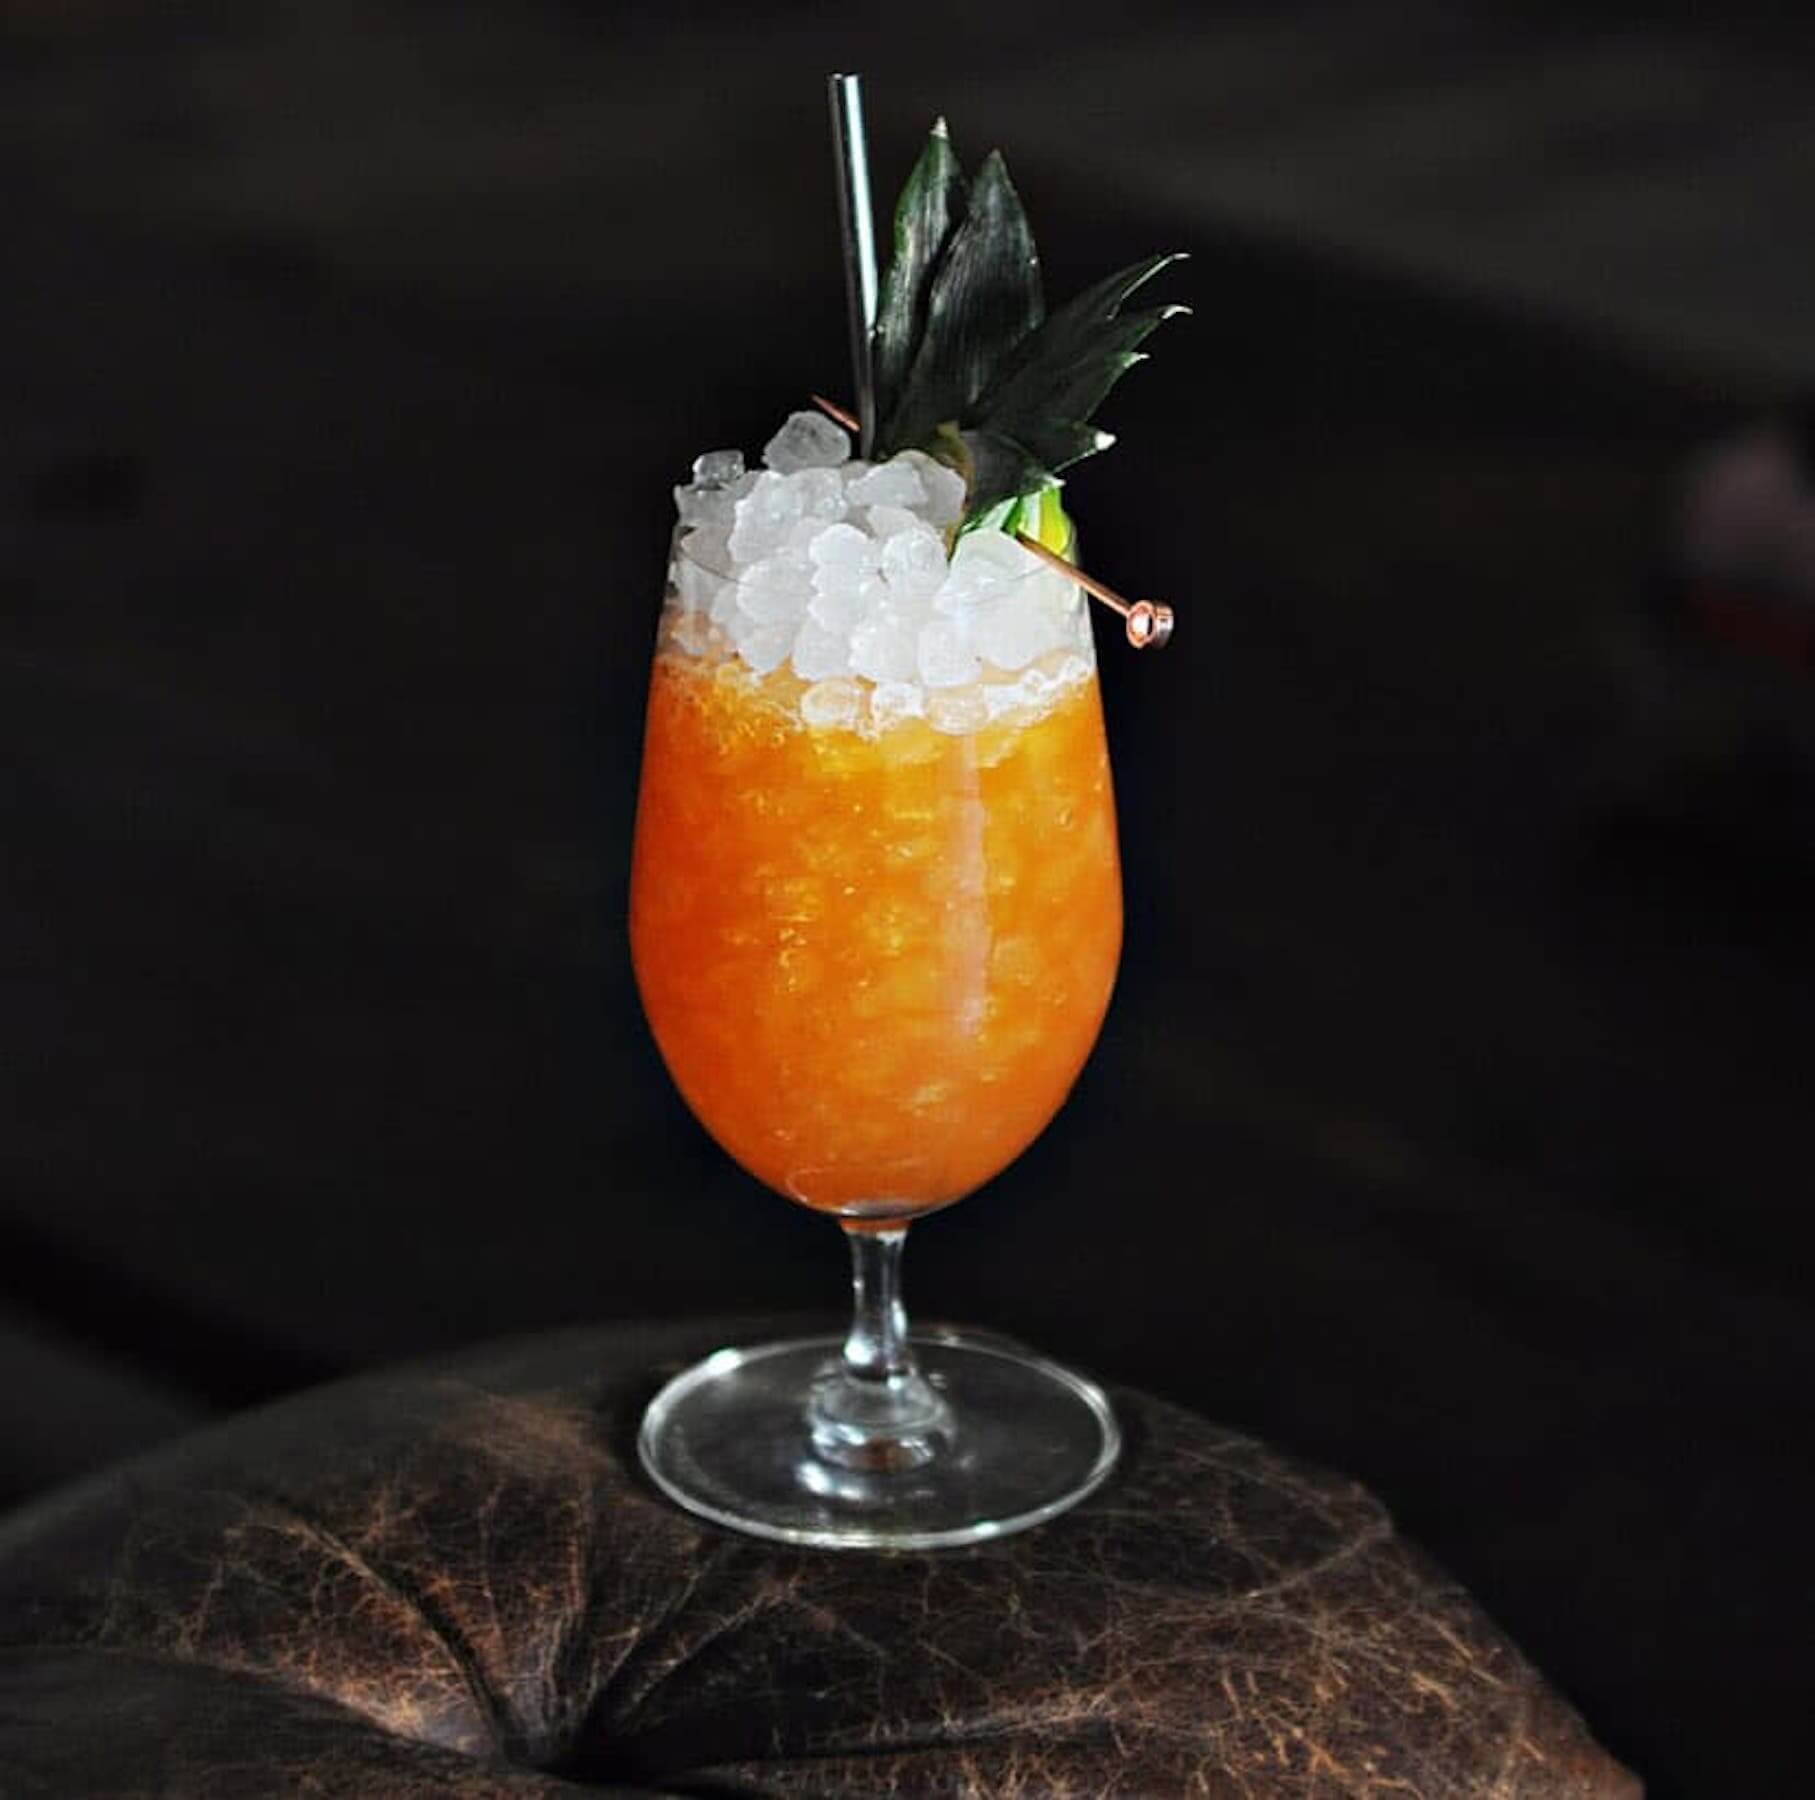 Sarah Morrissey's Gin & Tonic Cocktail Recipe